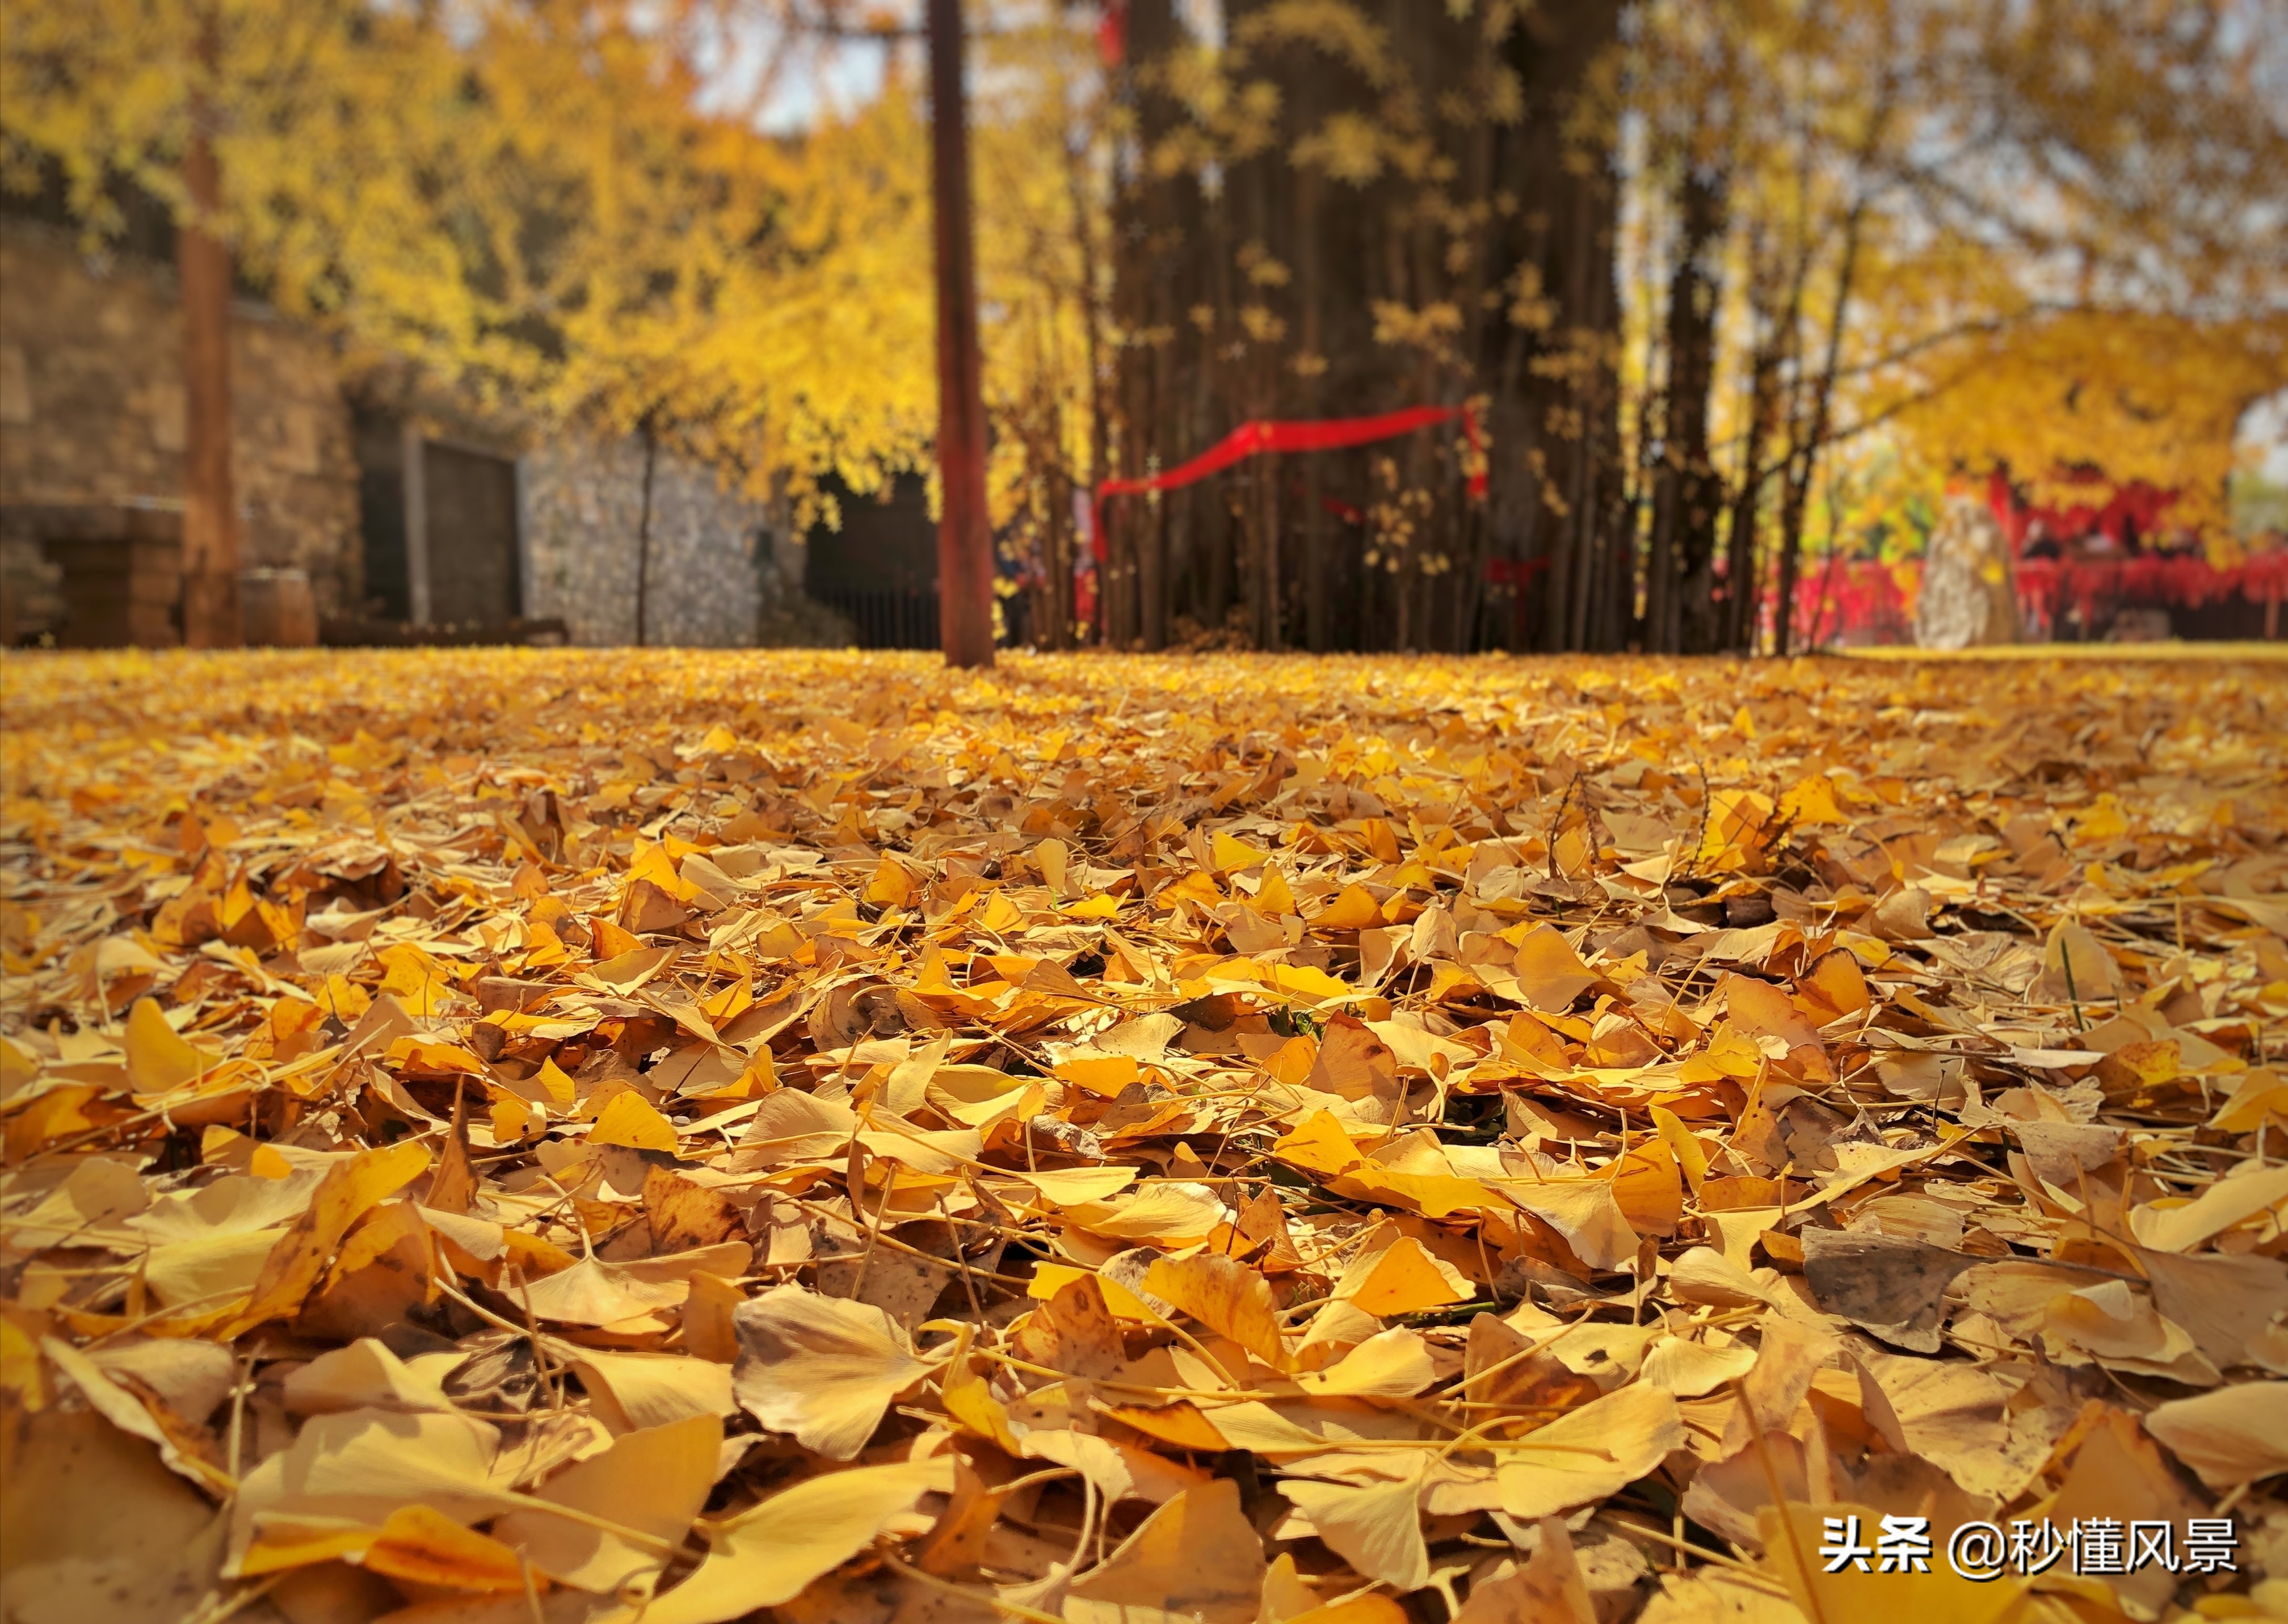 西安终南山 赏秋好去处 那里有棵1400年前唐太宗种的银杏树 旅游 蛋蛋赞